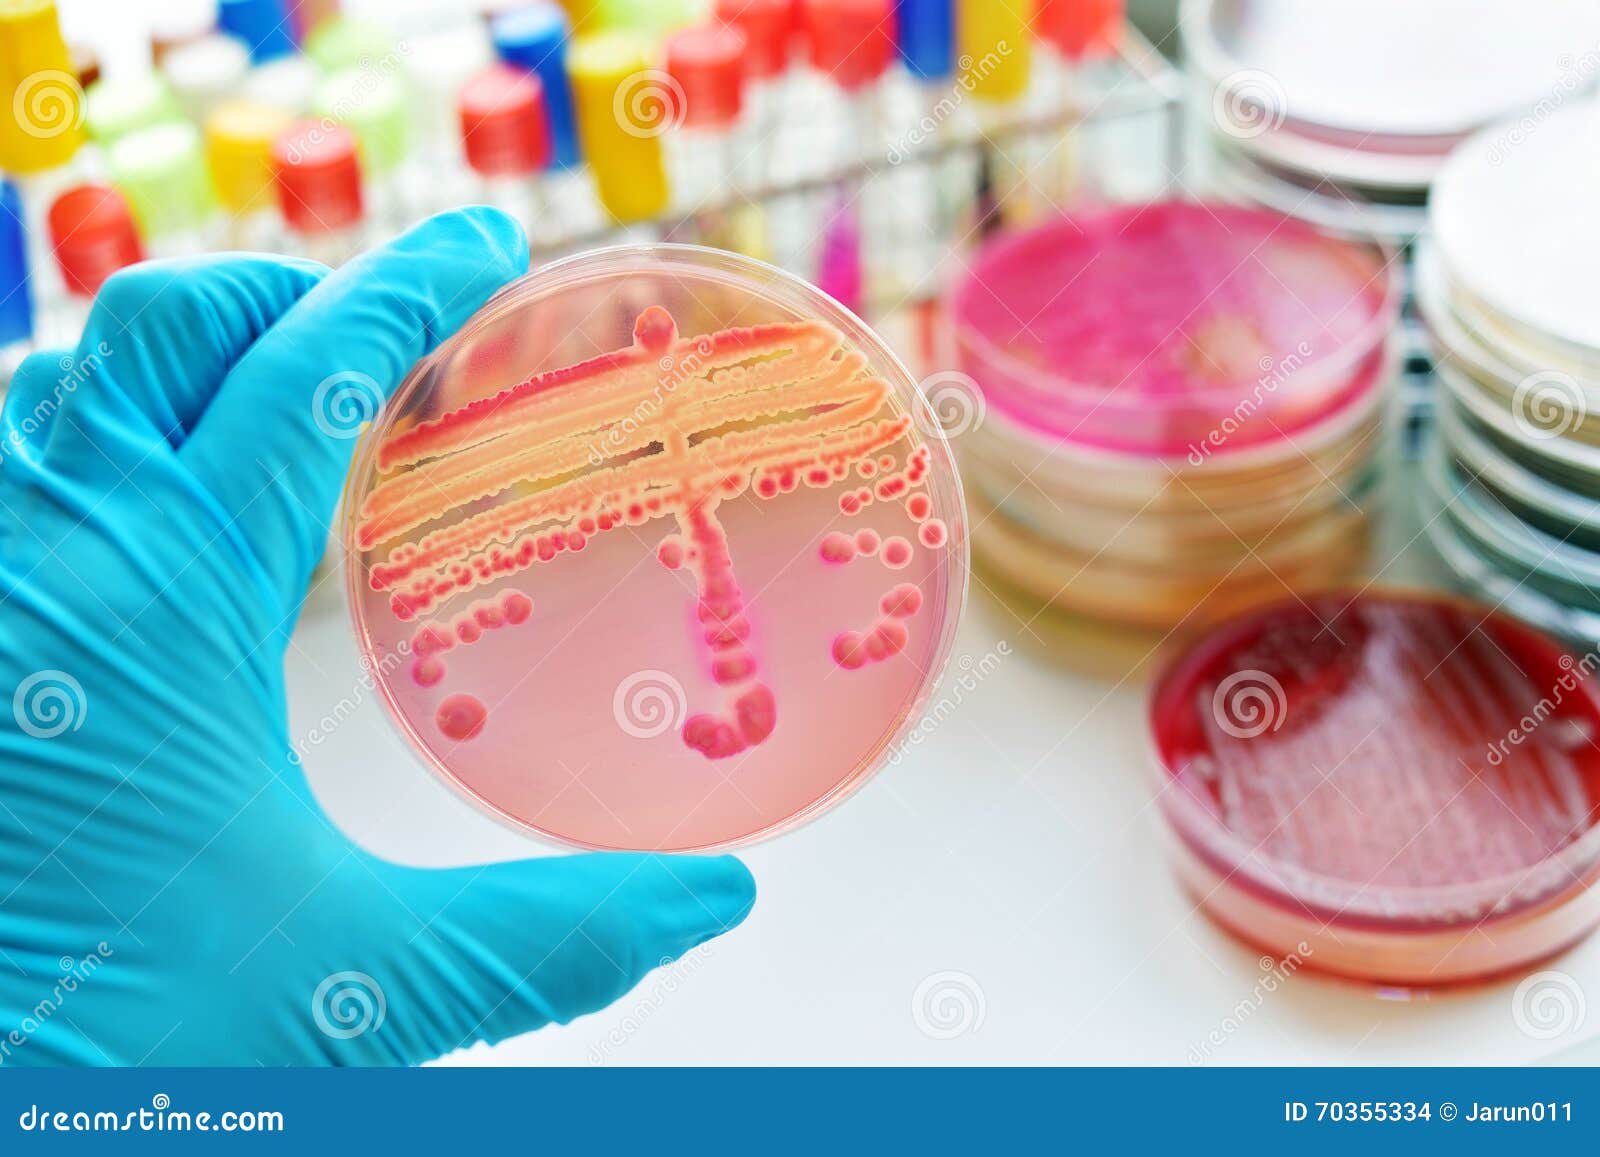 bacteria culture